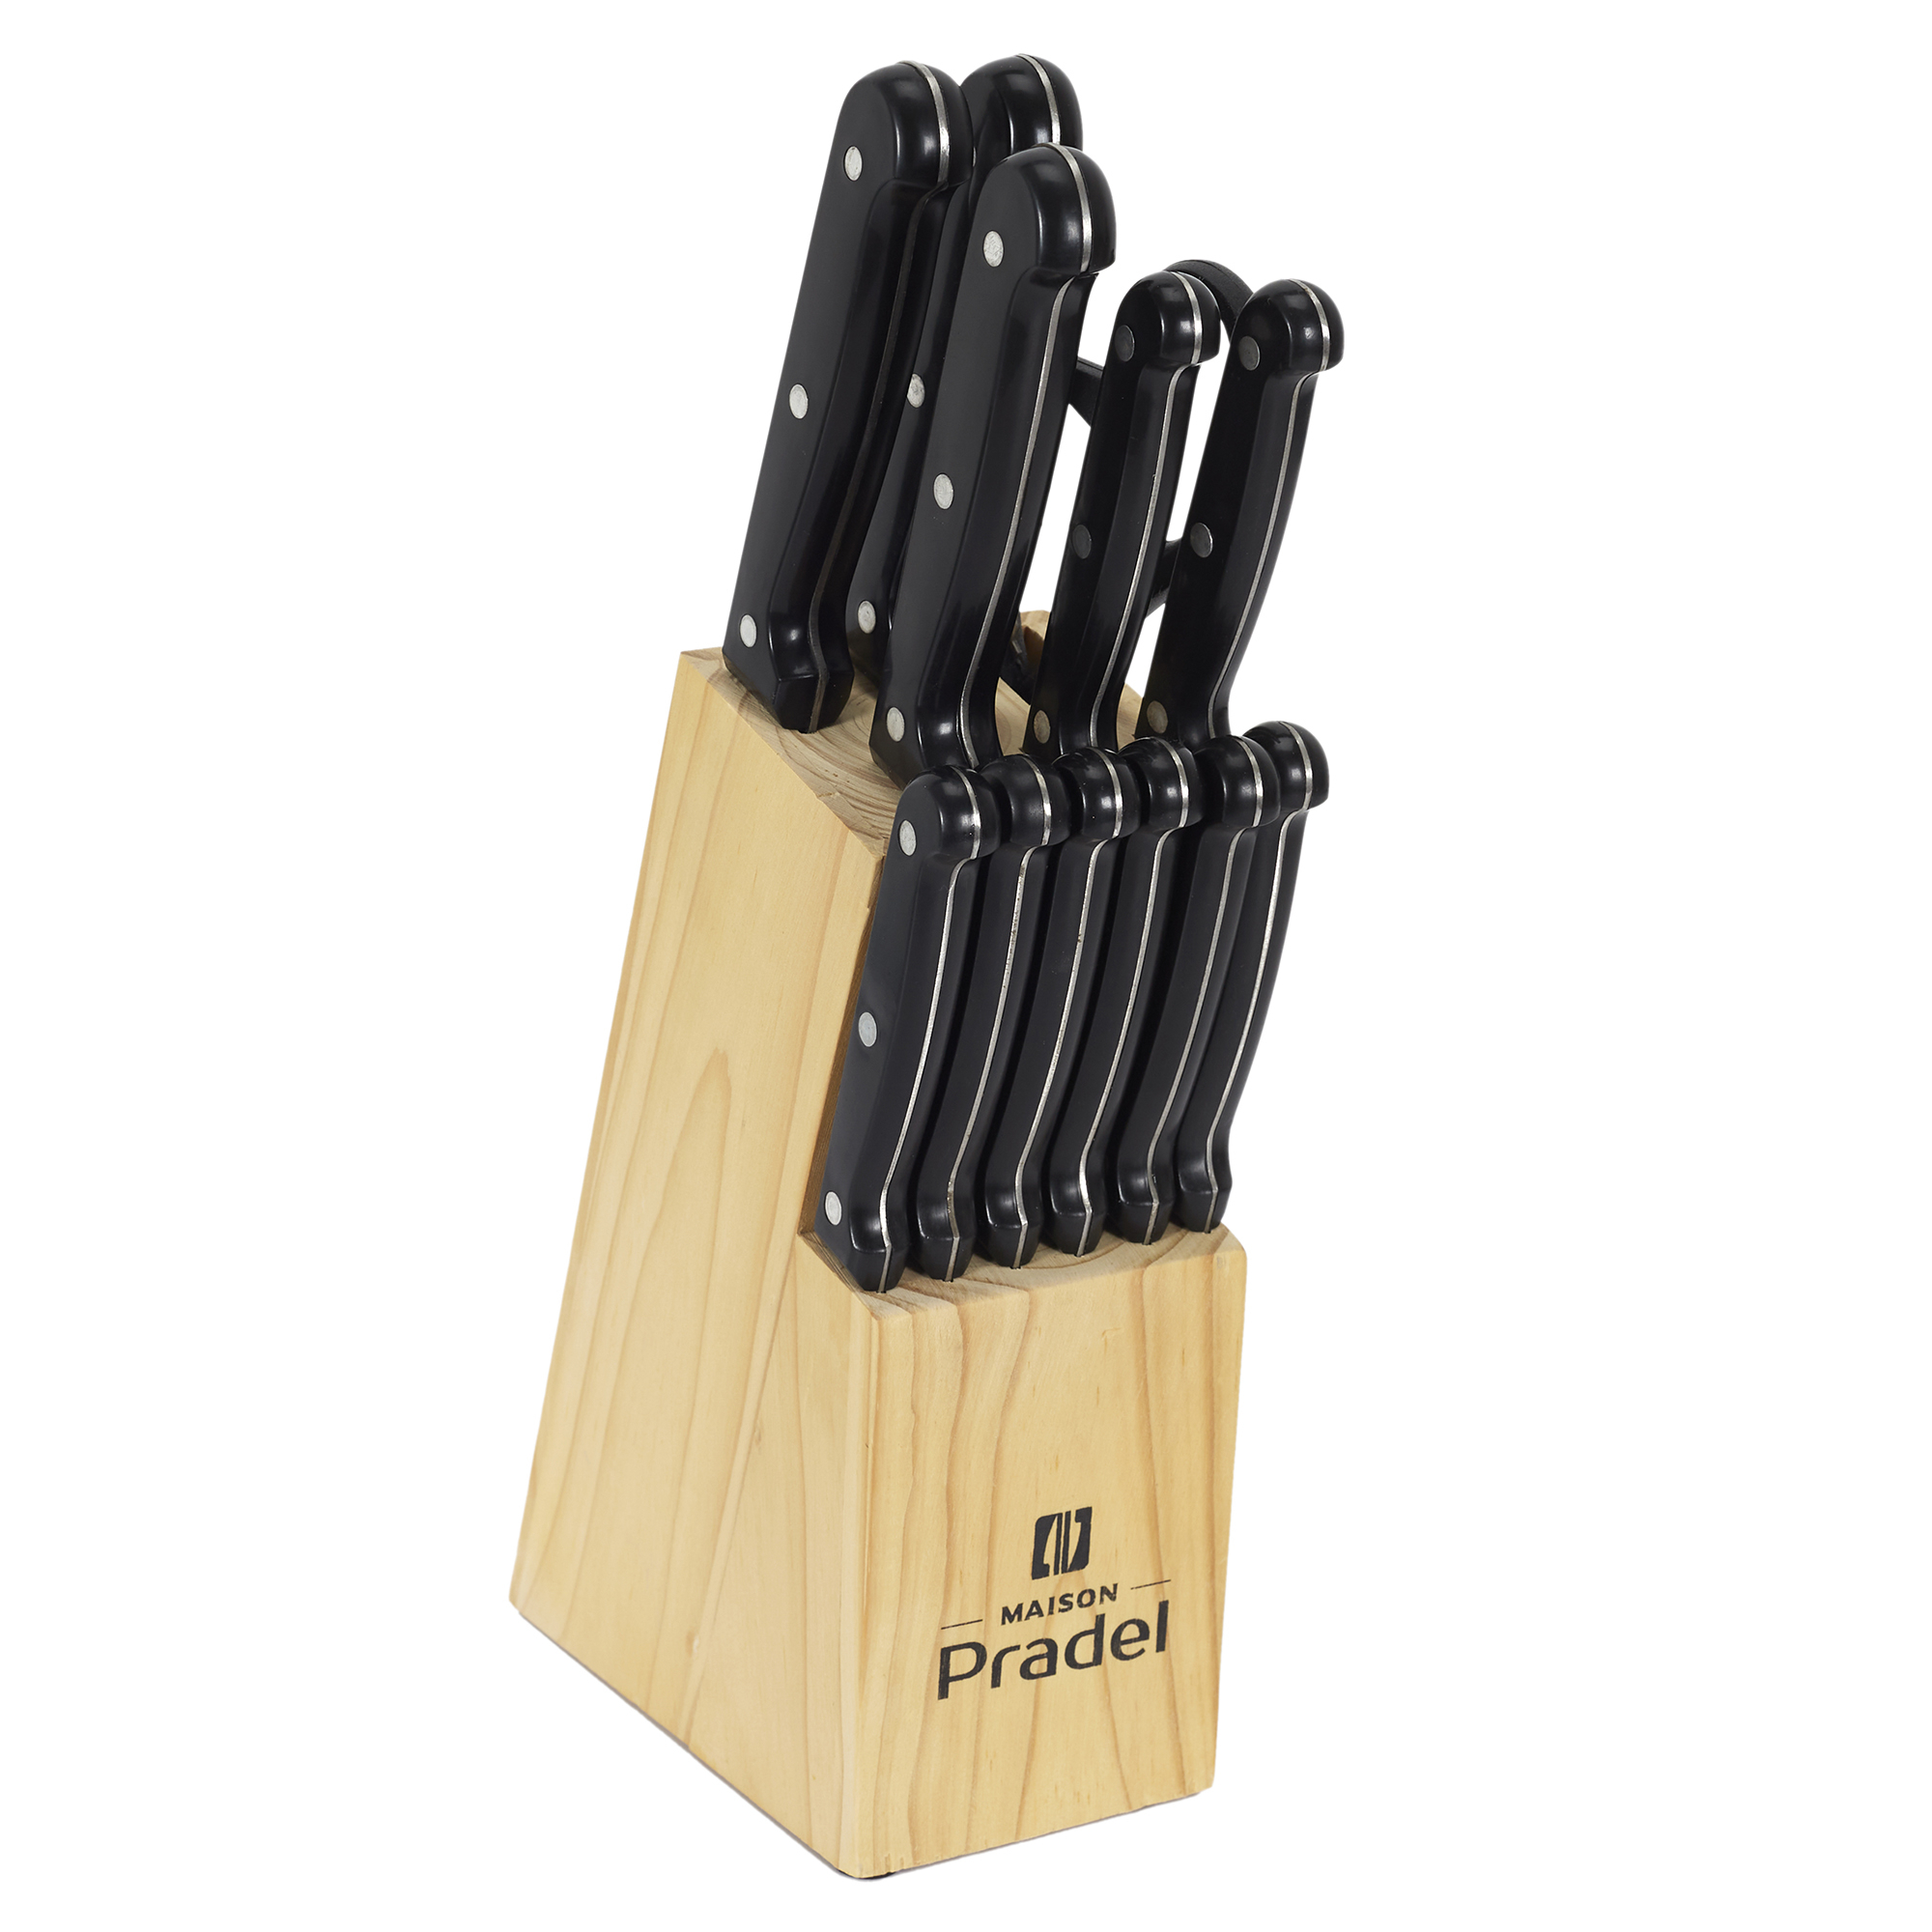 Bloc rangement 11 couteaux - Cuisine - L 29,5 cm x l 9,5 cm x H 34,5 cm